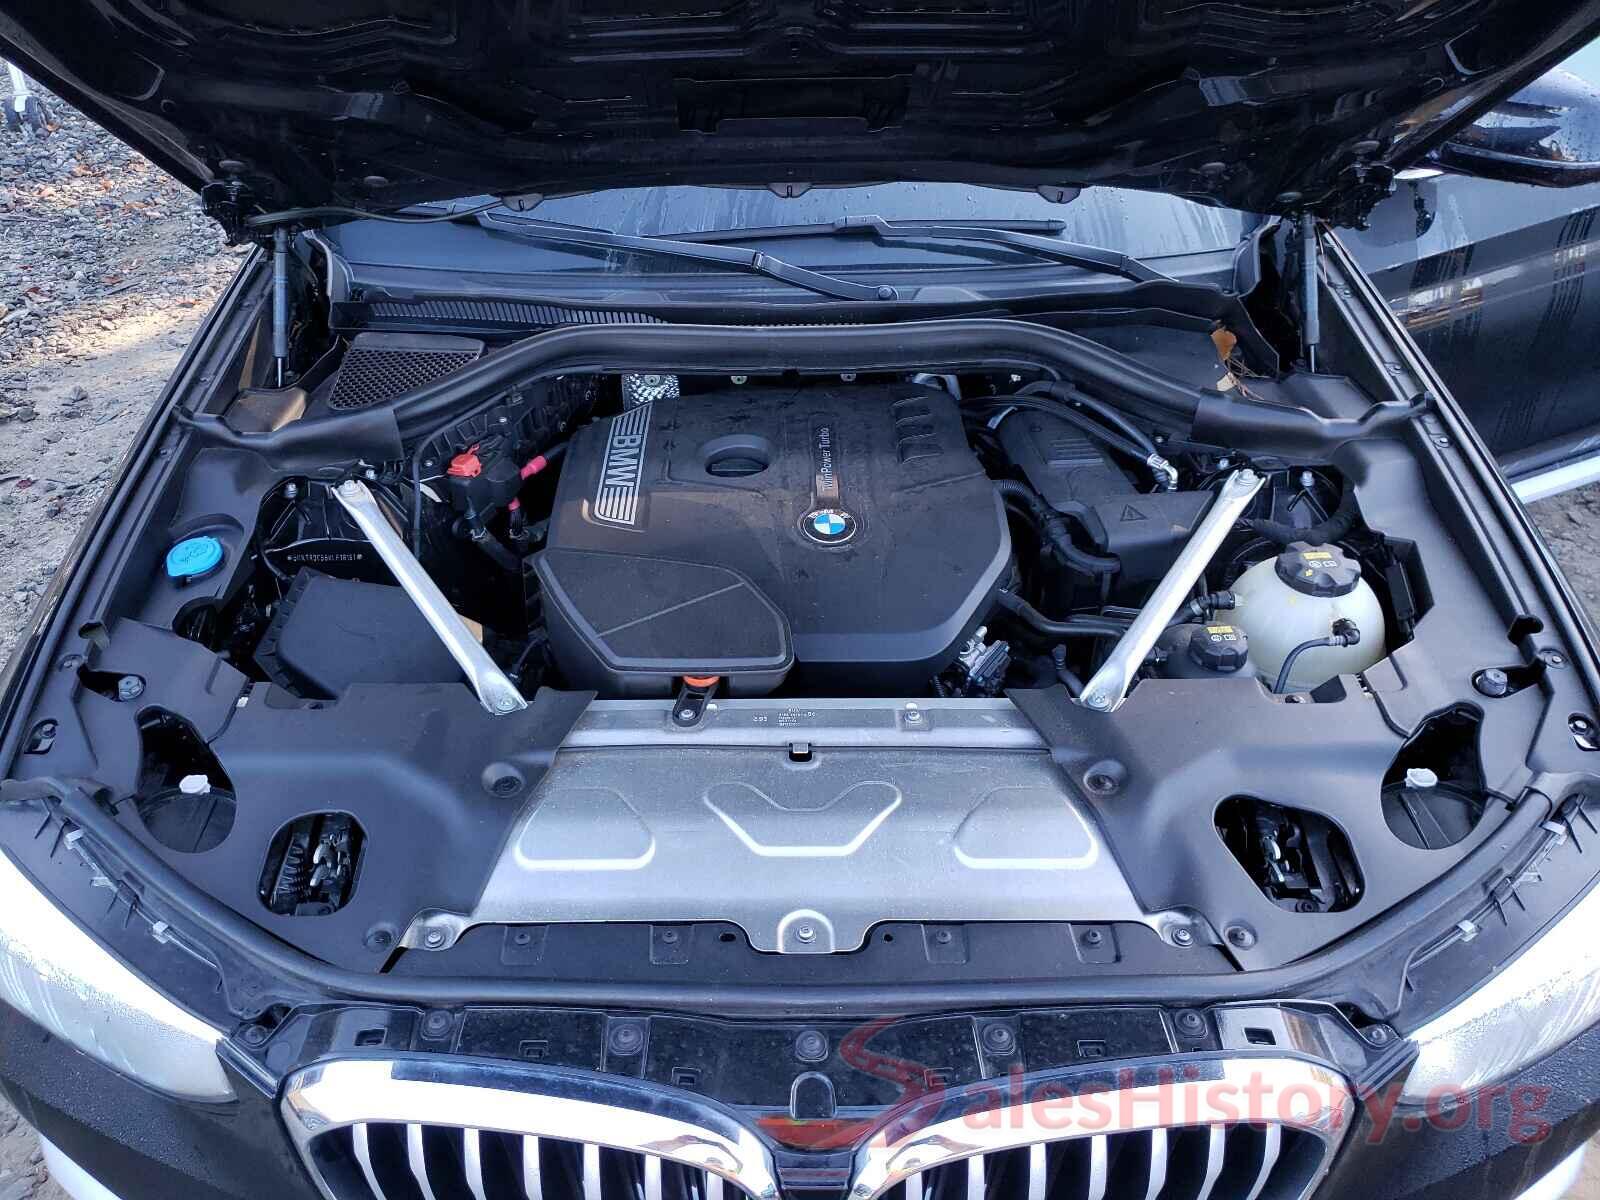 5UXTR9C56KLE18161 2019 BMW X3